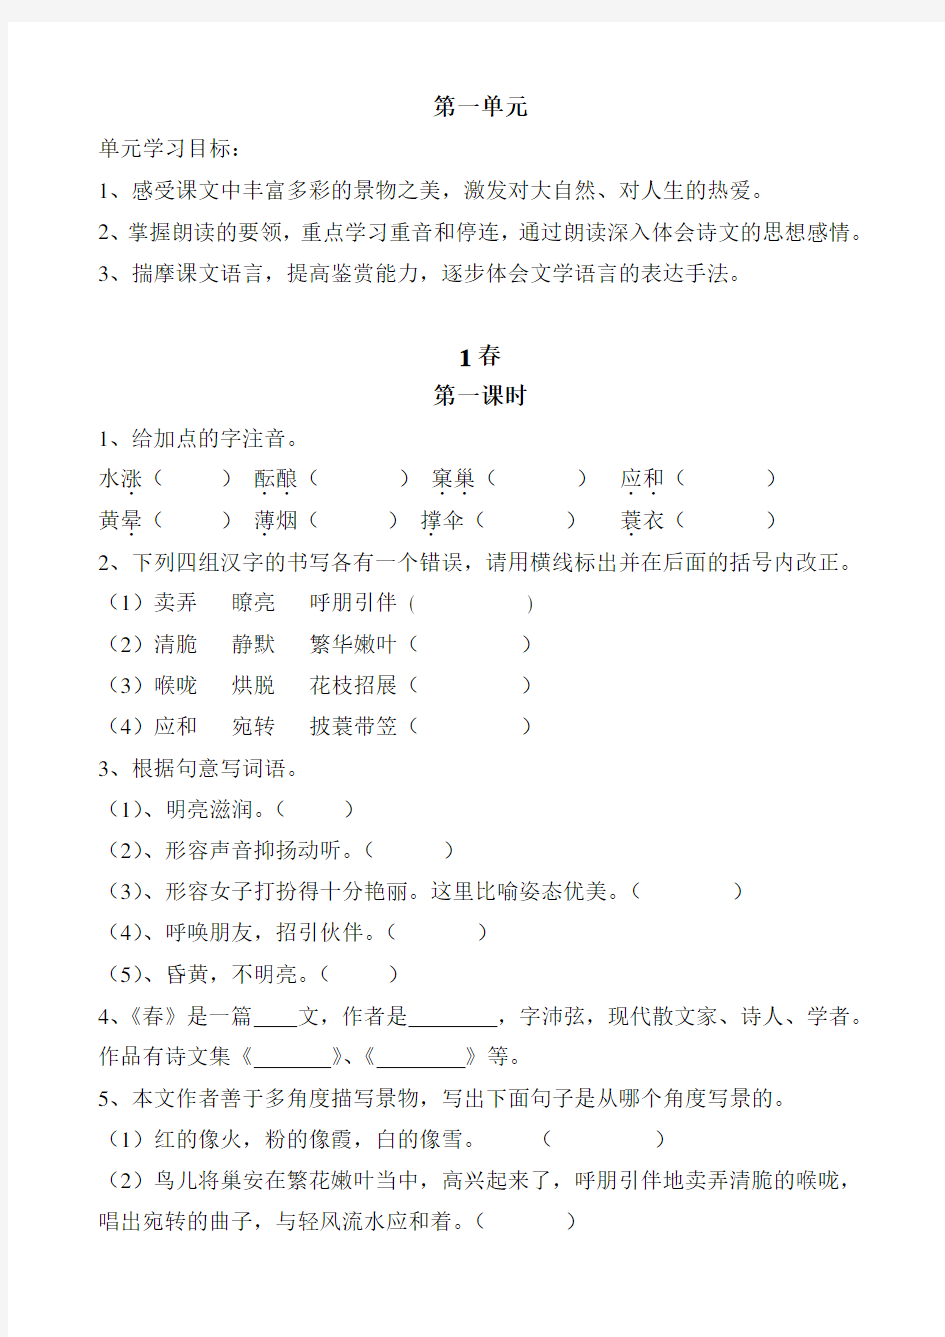 中学语文七年级上册第一单元作业设计分析